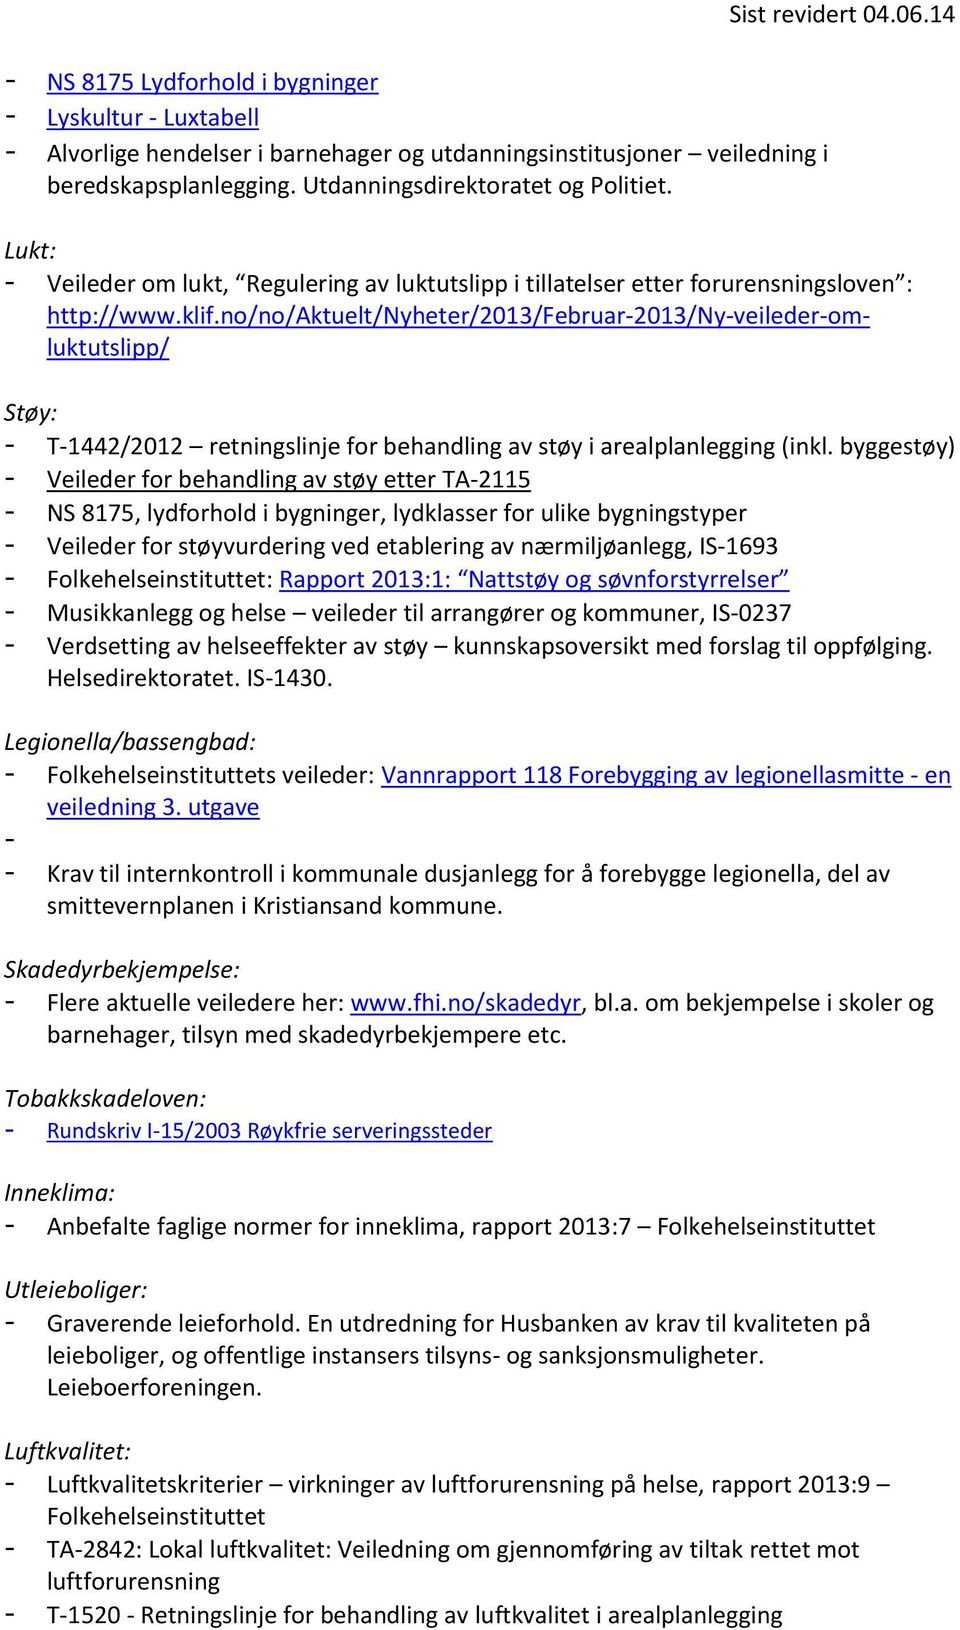 no/no/aktuelt/nyheter/2013/februar-2013/ny-veileder-omluktutslipp/ Støy: - T-1442/2012 retningslinje for behandling av støy i arealplanlegging (inkl.